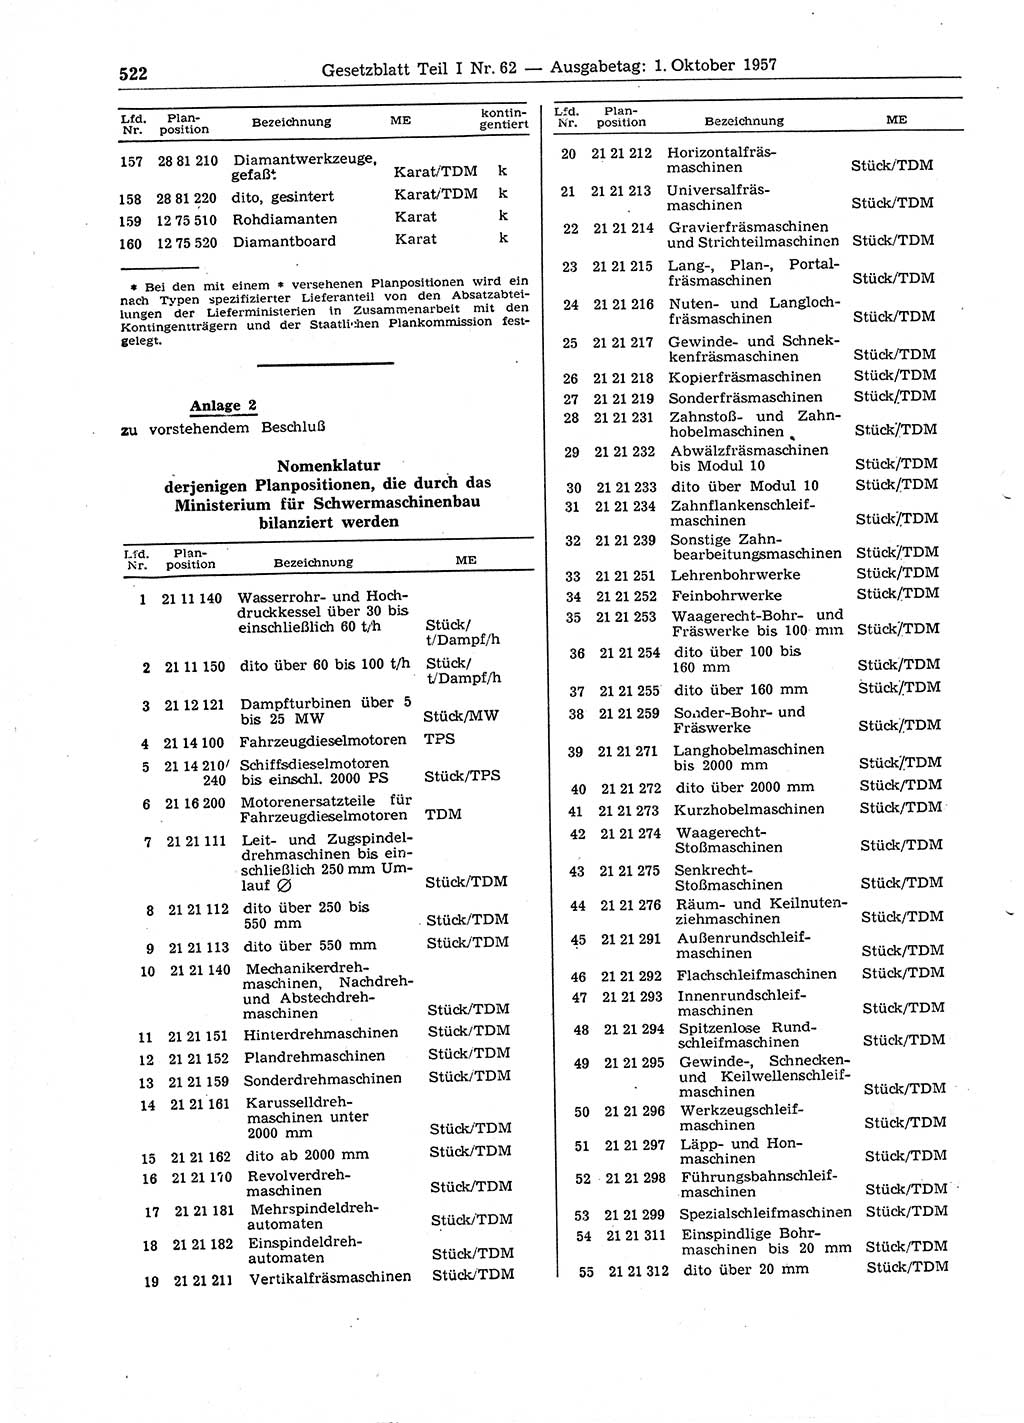 Gesetzblatt (GBl.) der Deutschen Demokratischen Republik (DDR) Teil Ⅰ 1957, Seite 522 (GBl. DDR Ⅰ 1957, S. 522)